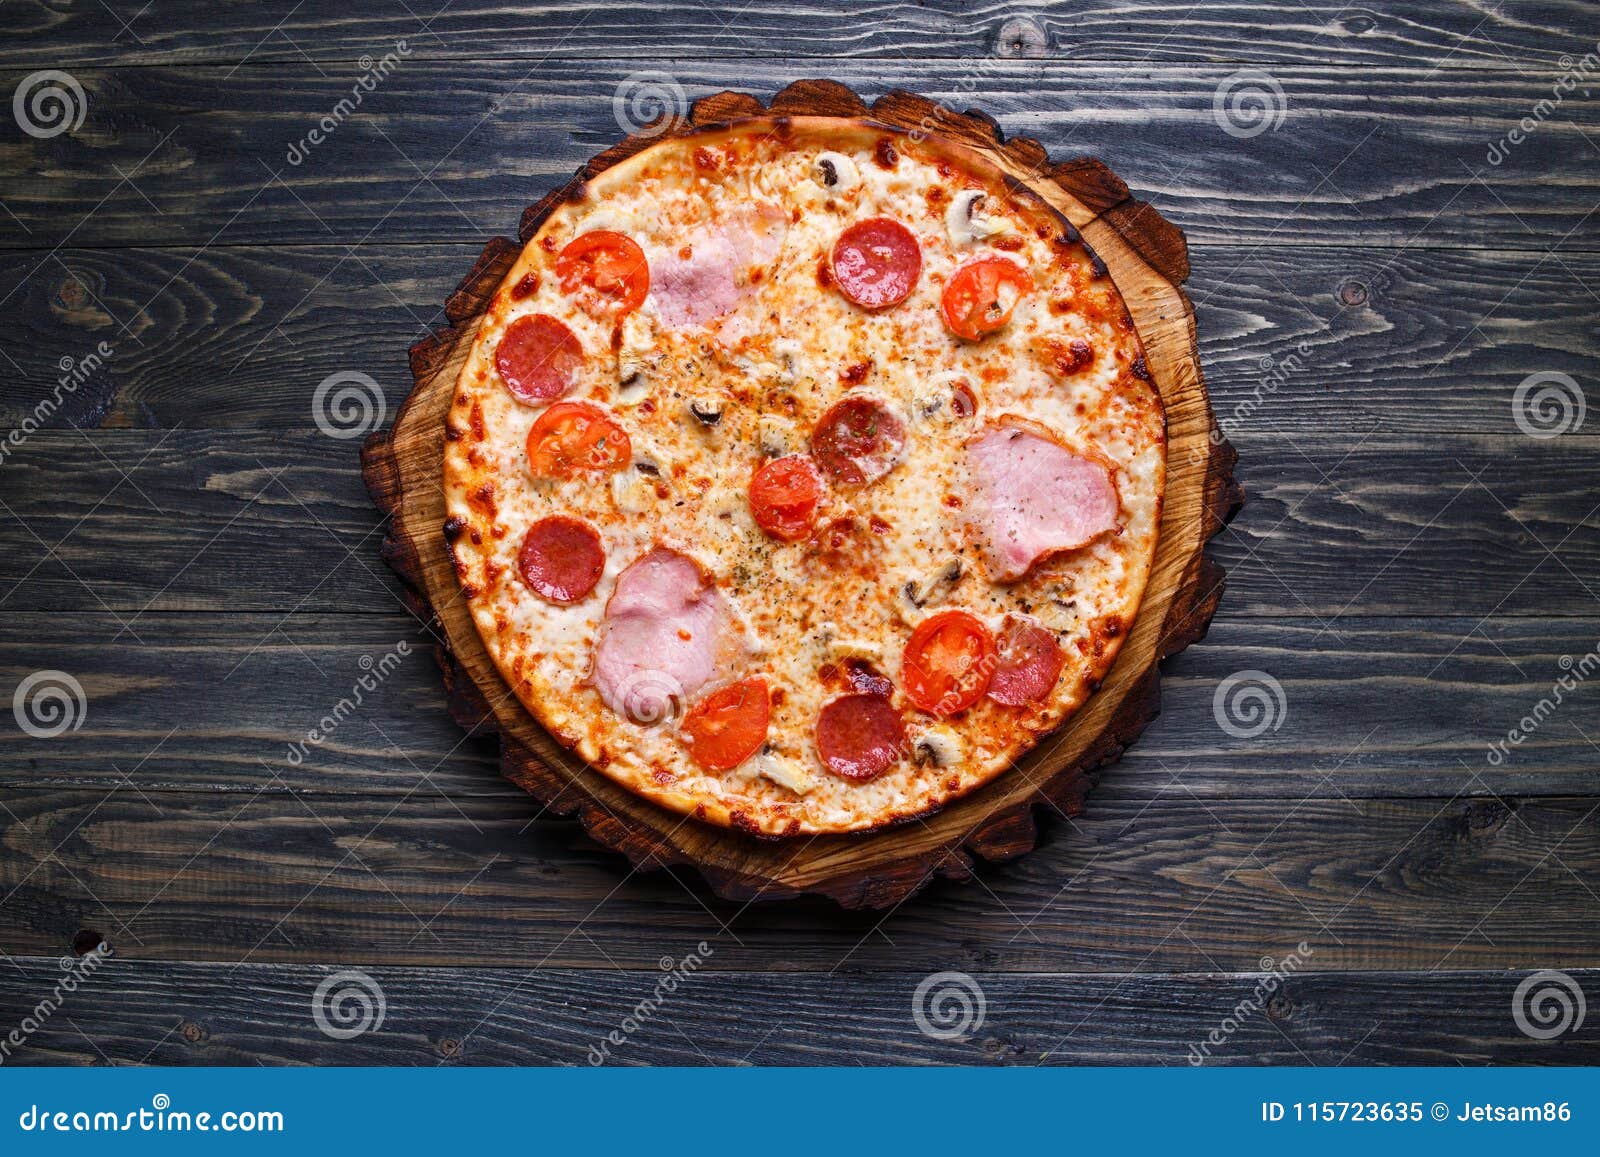 сицилийская пицца фото фото 106